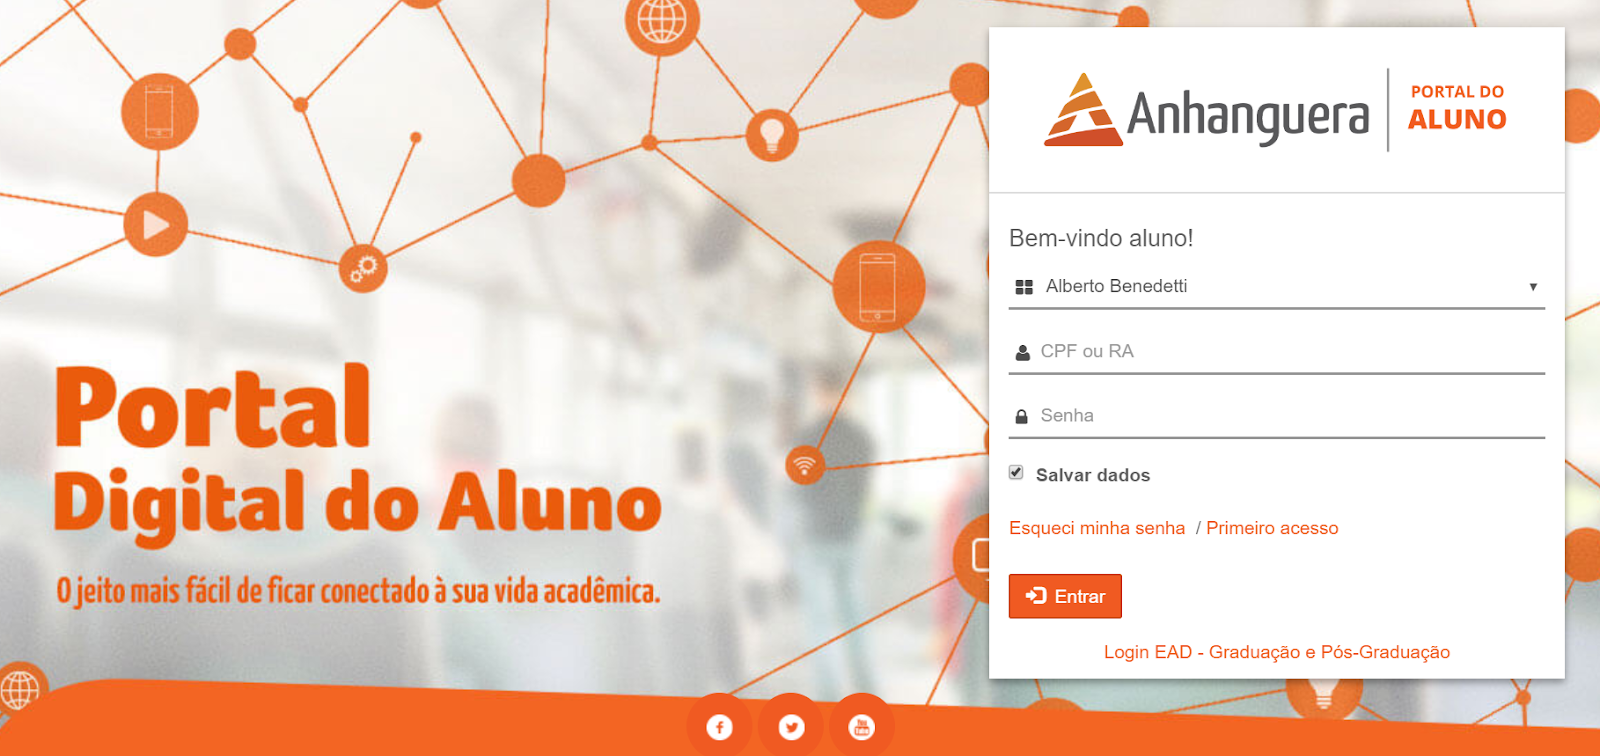 portal digital do aluno anhanguera